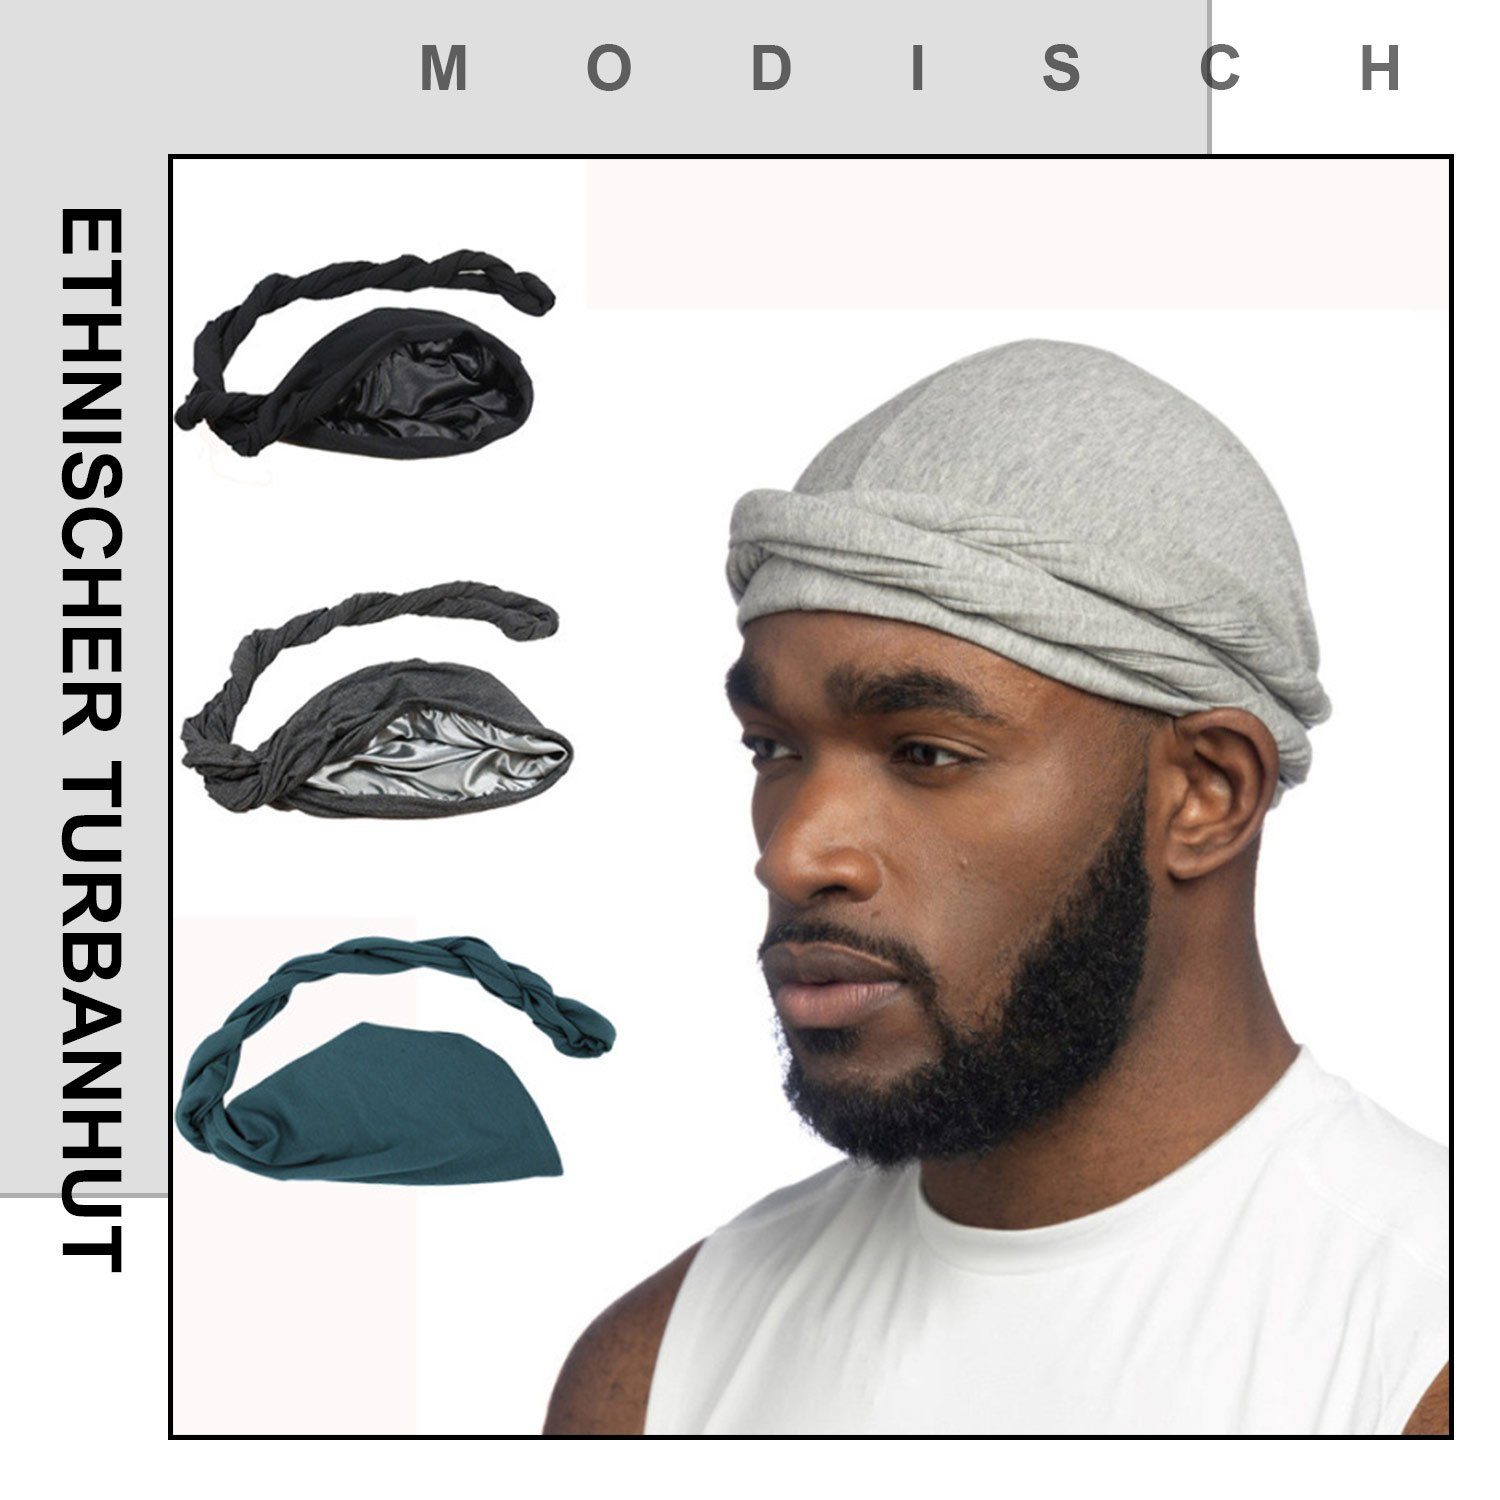 Turban Kopfbedeckung, Hut, MAGICSHE Schlapphut Ethnic Turbanmütze Herren Turban Schwarz